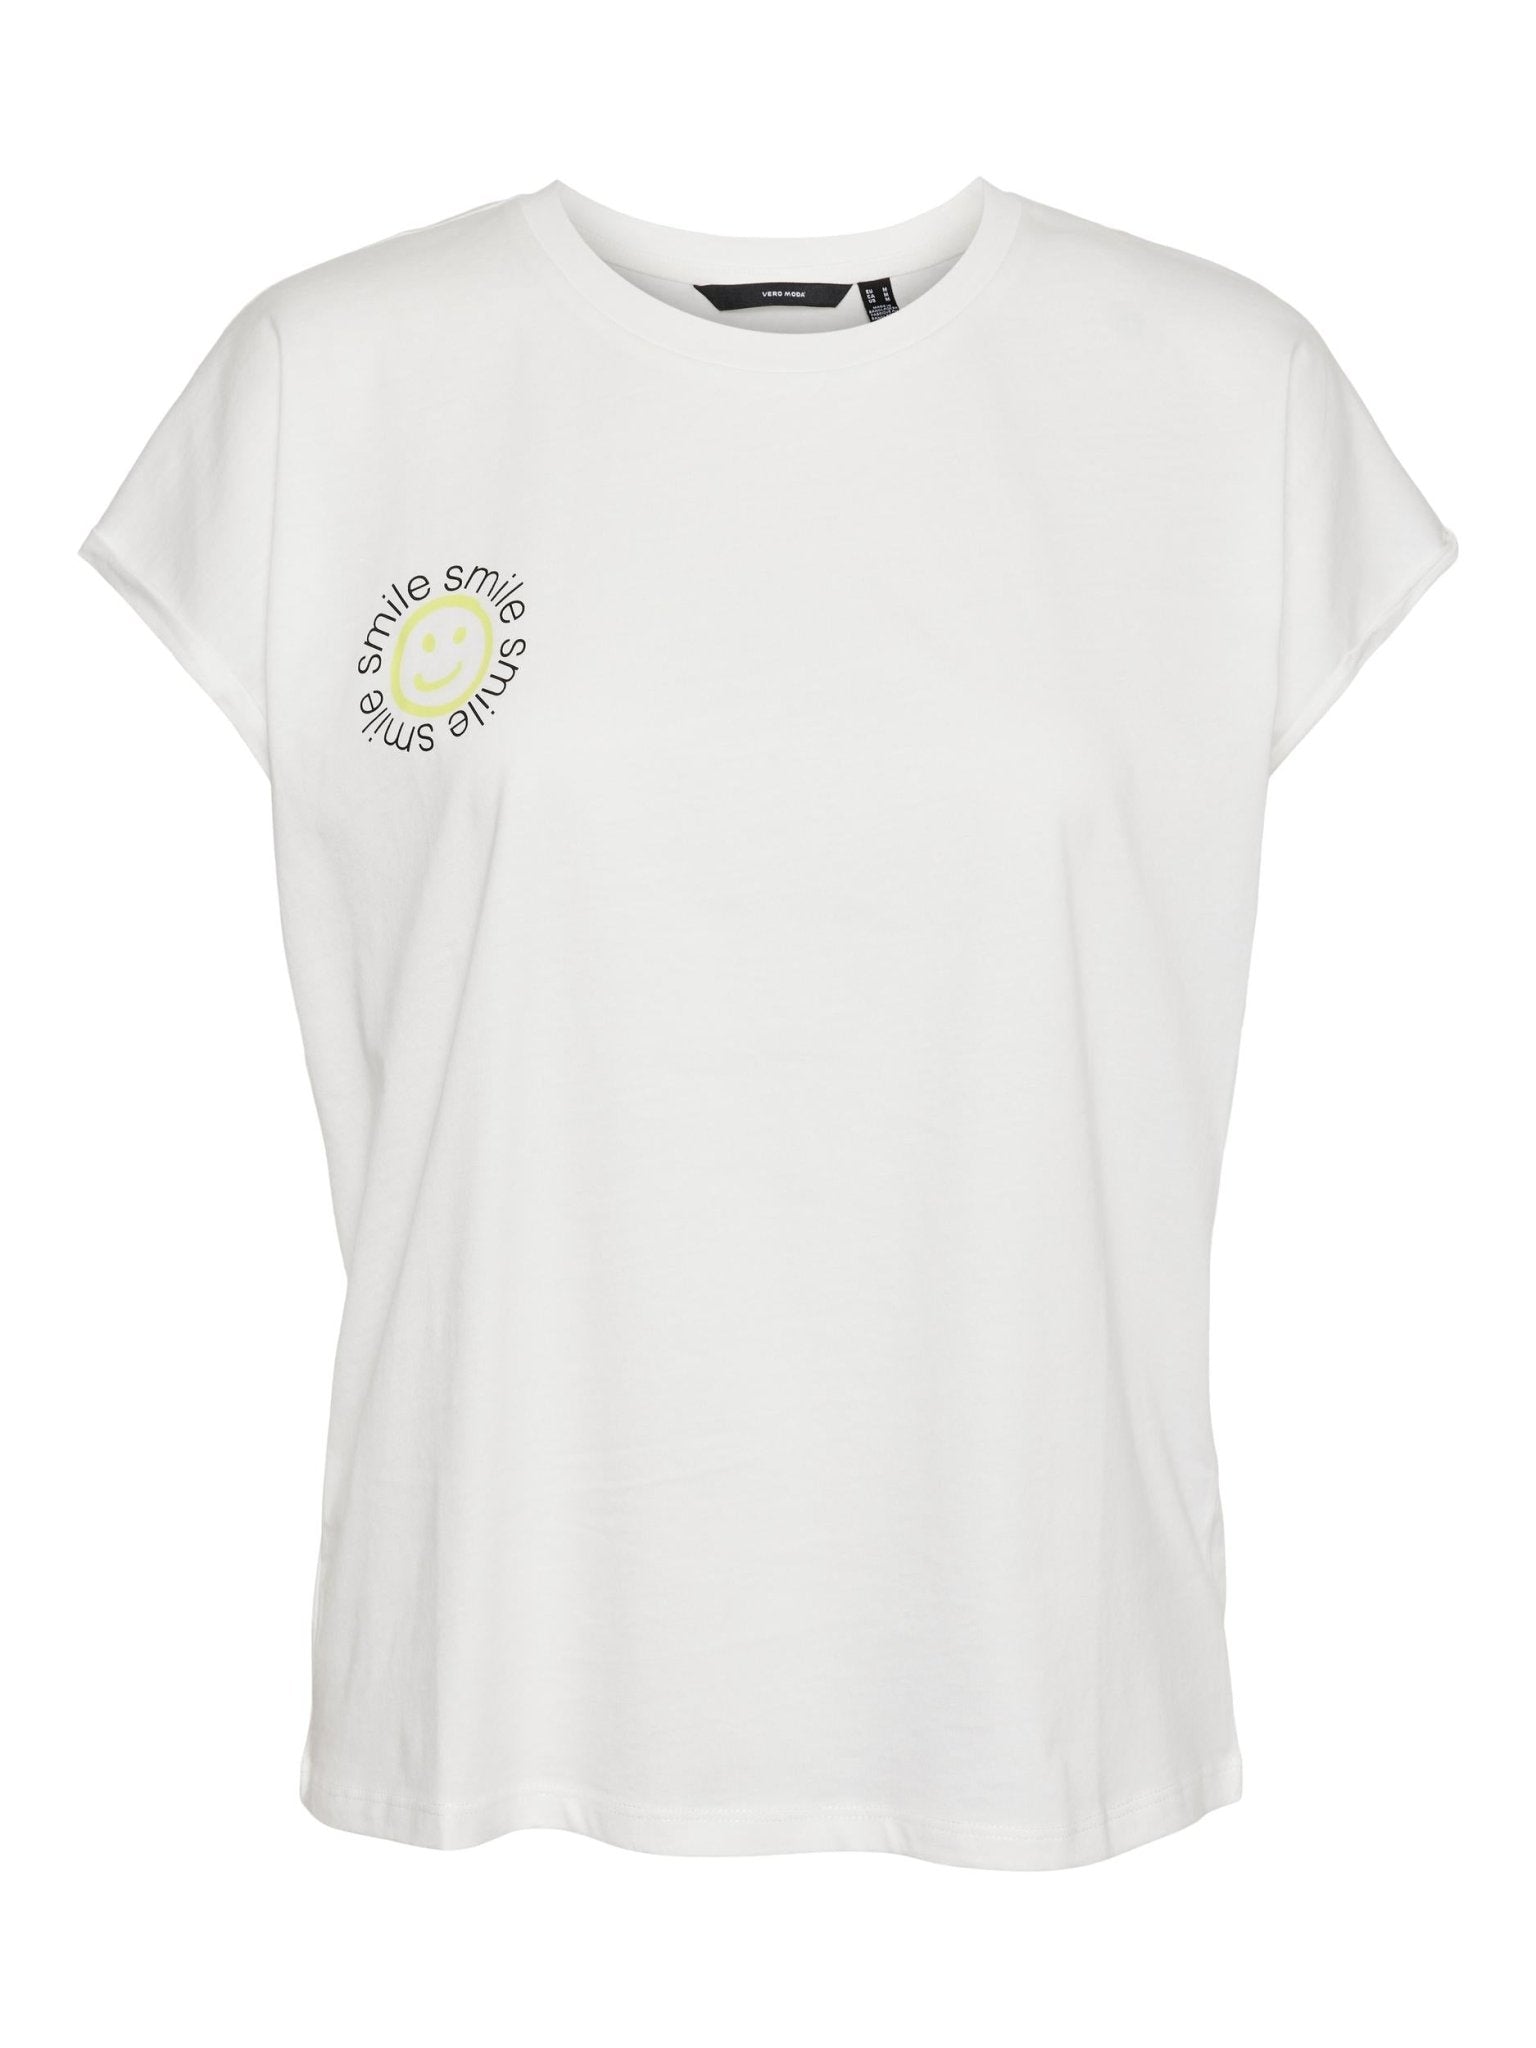 10289798T-Shirt mit Smiley - WildflowersM (46/48)